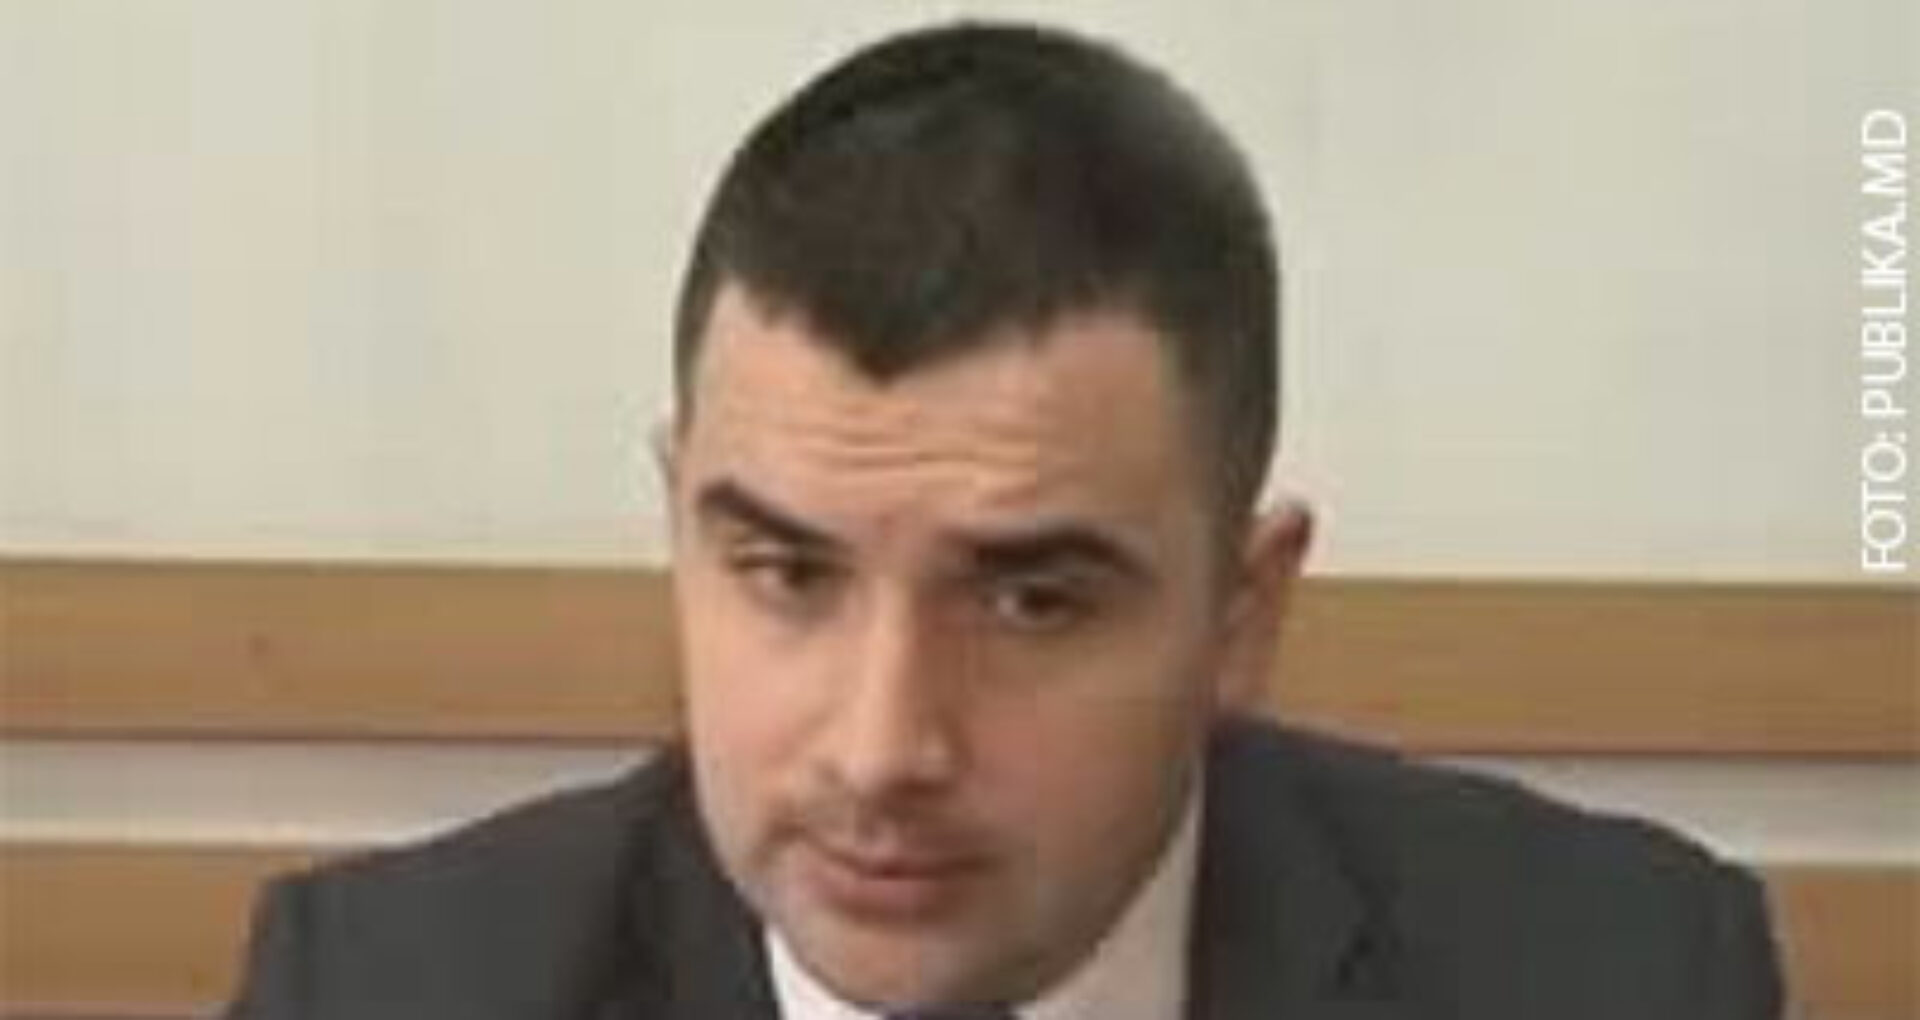 Fostul procuror anticorupție Roman Statnîi, învinuit de escrocherie în proporții deosebit de mari, rămâne în arest preventiv